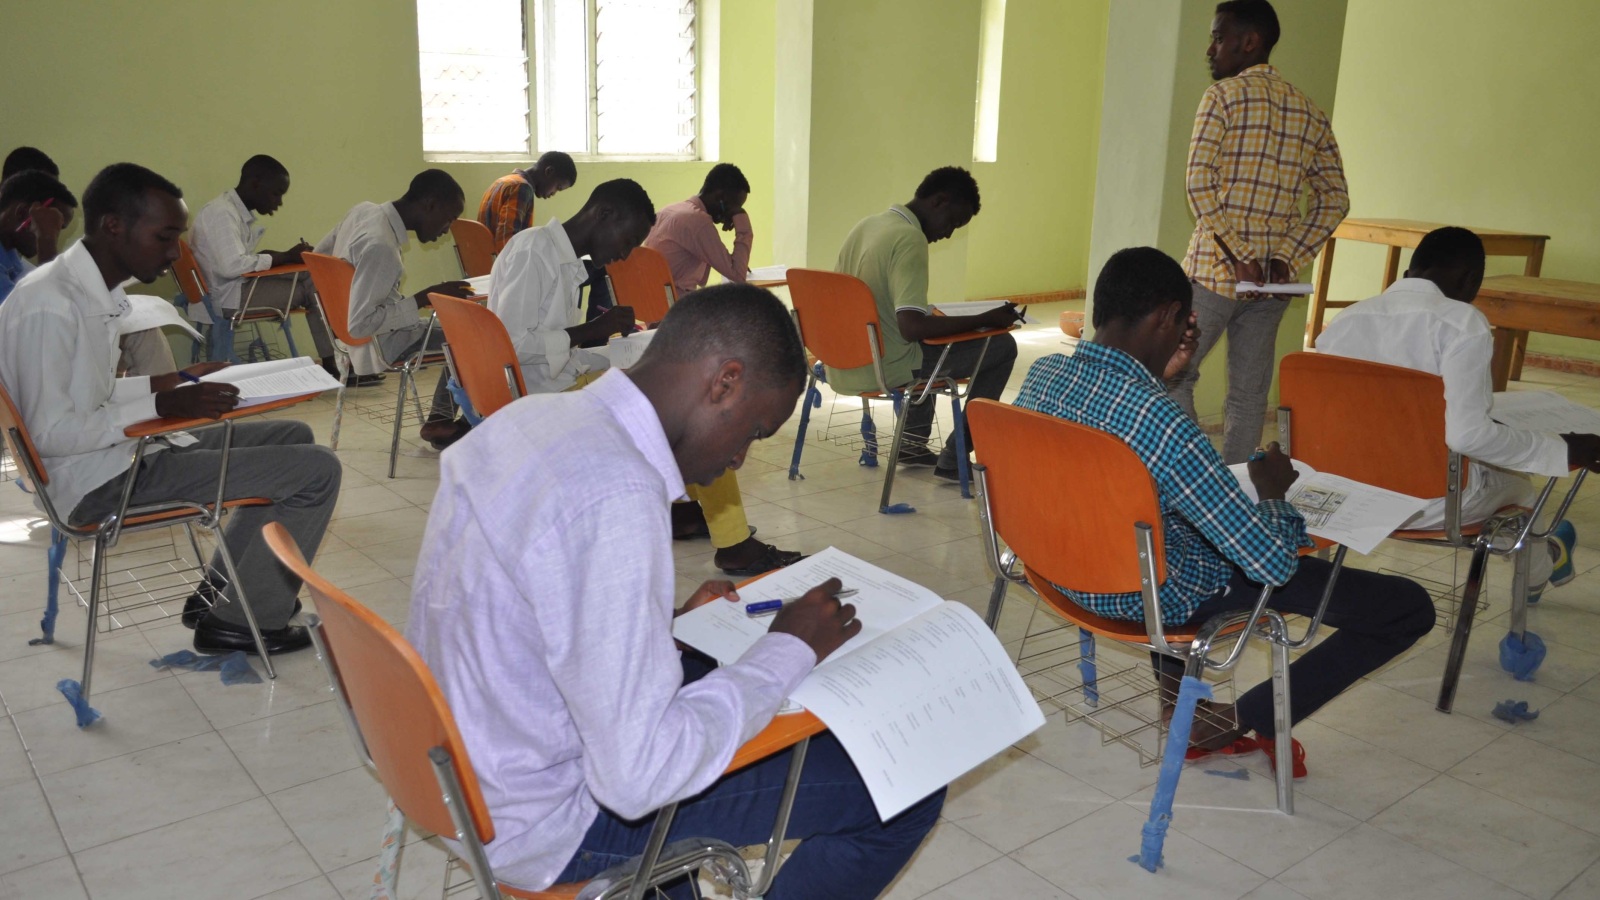 ‪مراقب يتجول بين الطلاب أثناء امتحانات الثانوية العامة الموحدة بالصومال‬ (الجزيرة)